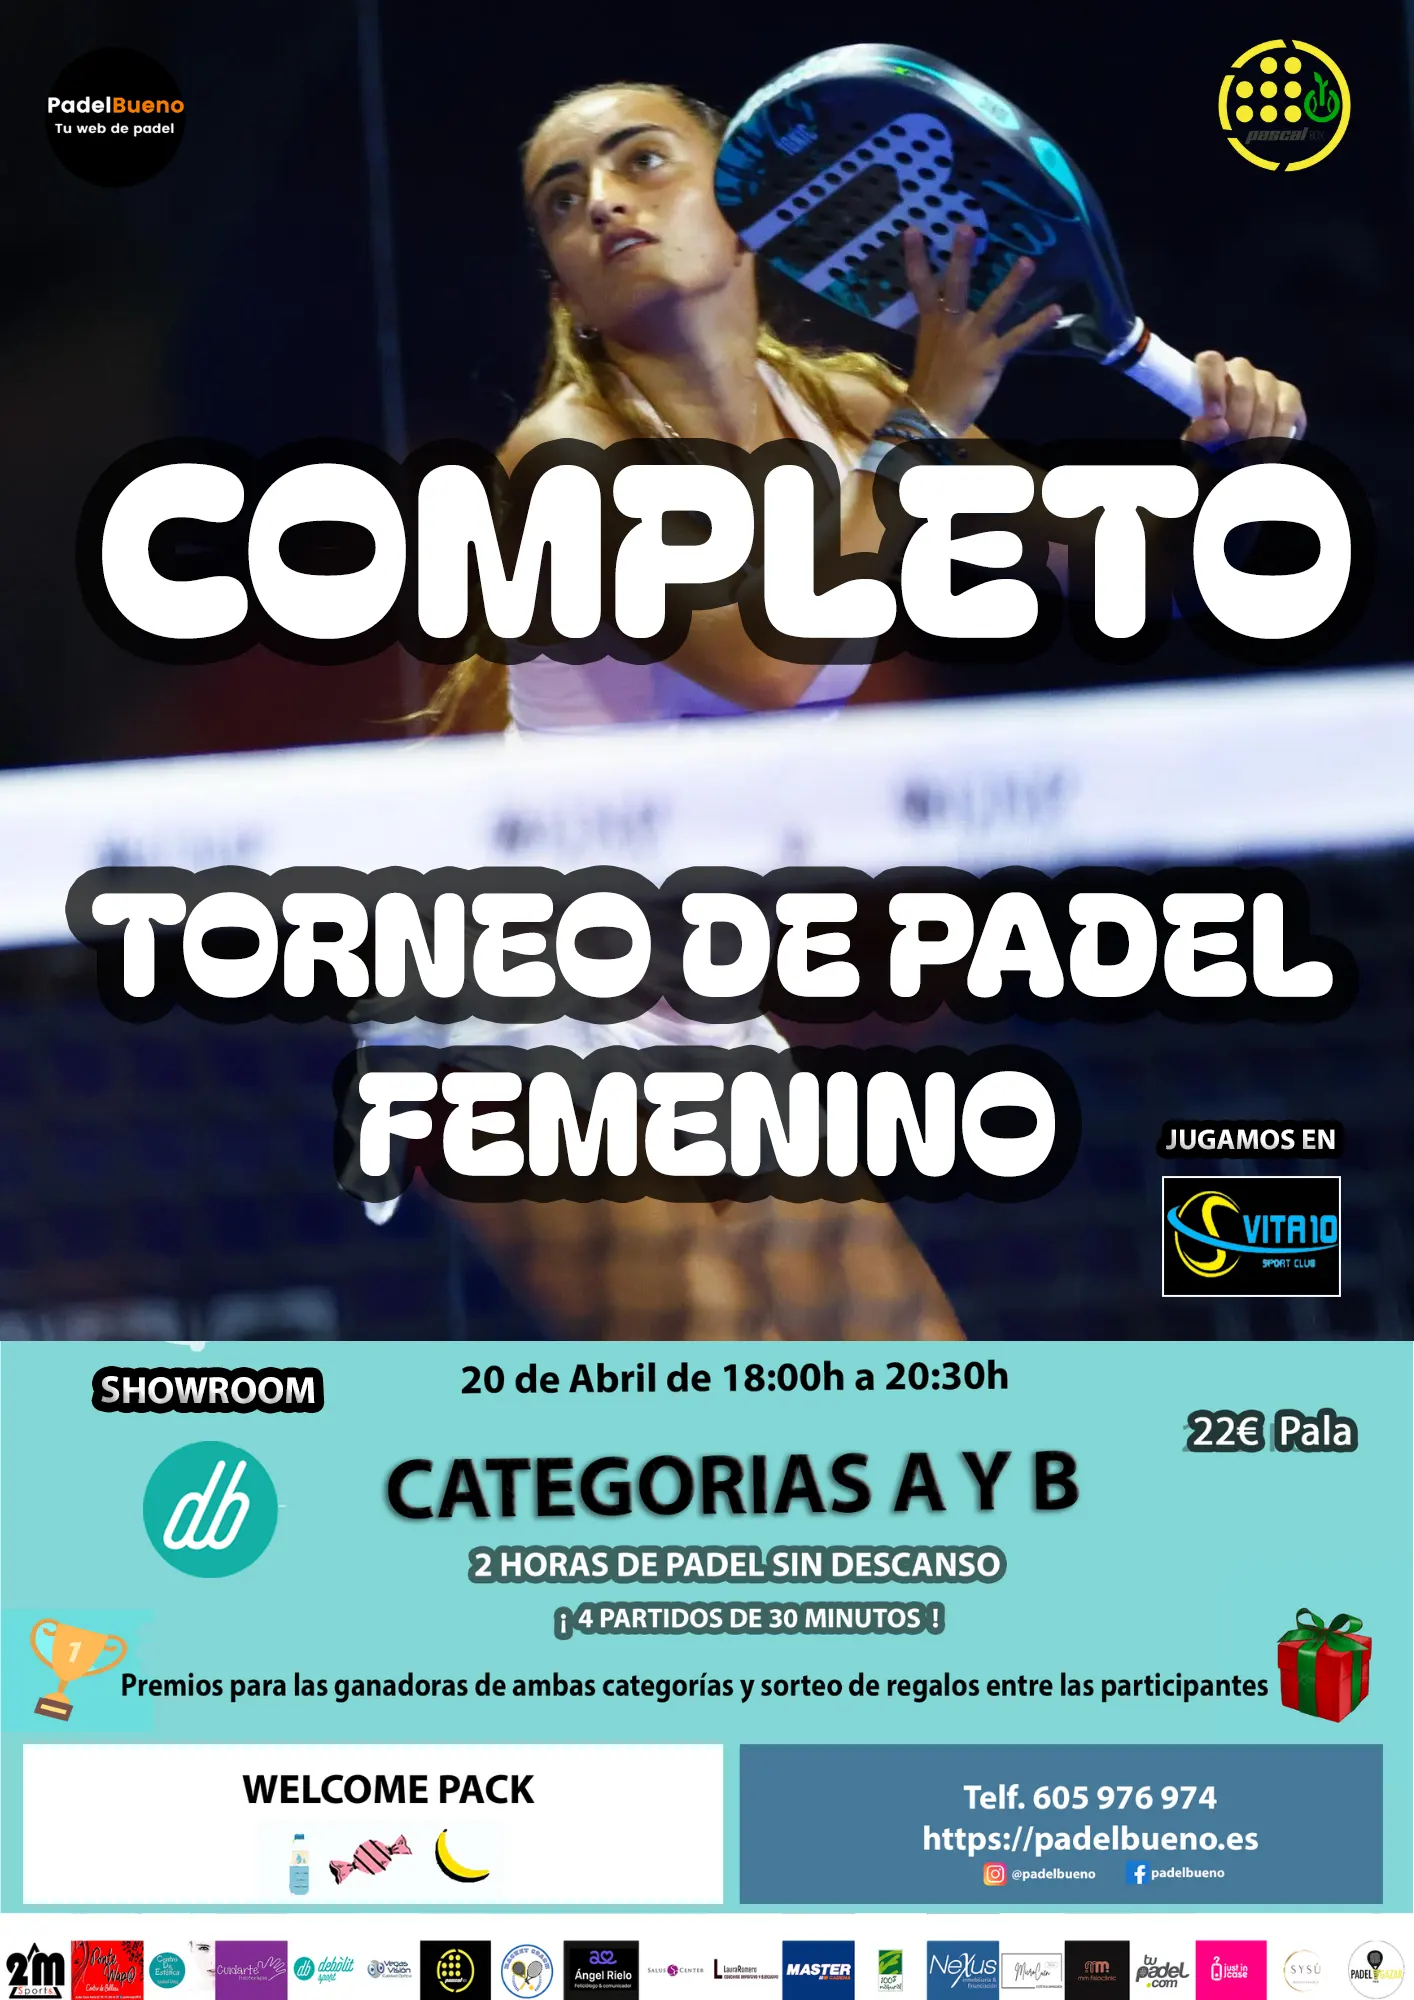 Torneos de Padel Femenino PadelBueno